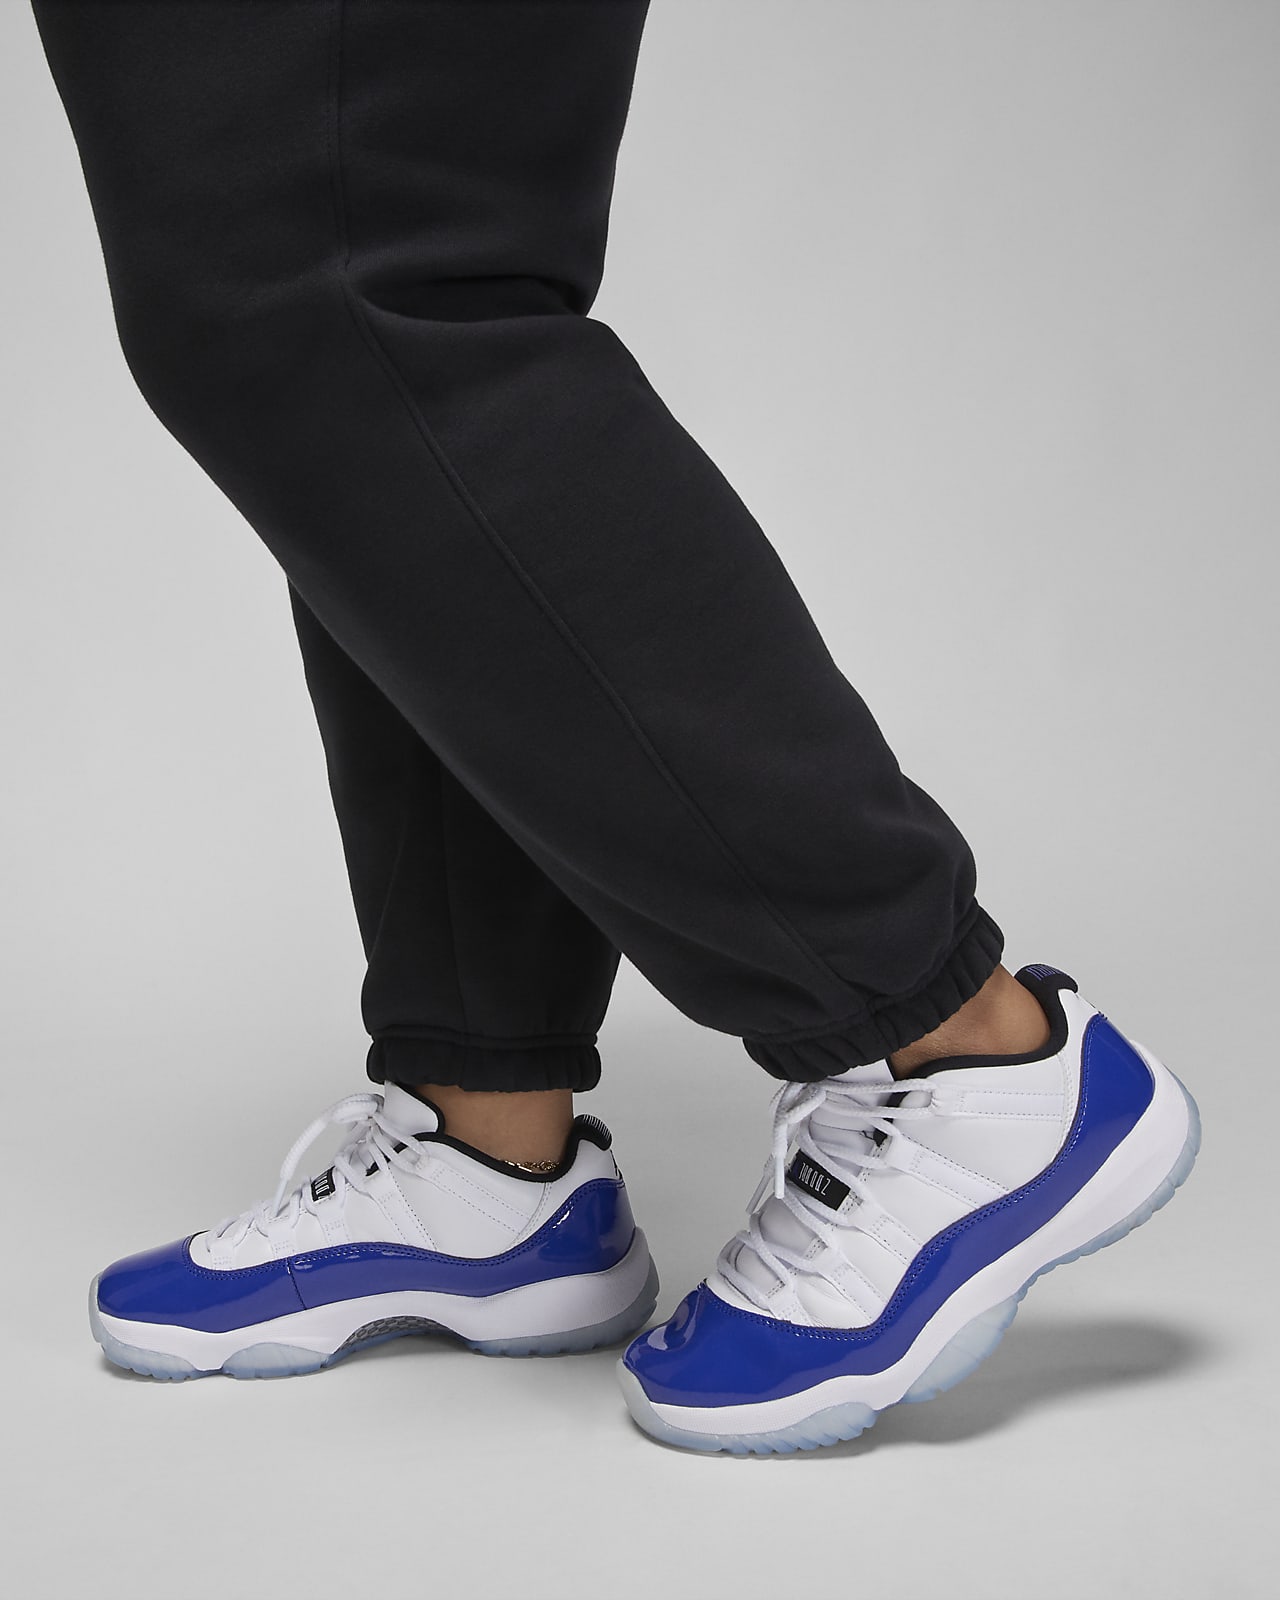 Jordan Brooklyn Women's Fleece Trousers (Plus Size). Nike SI